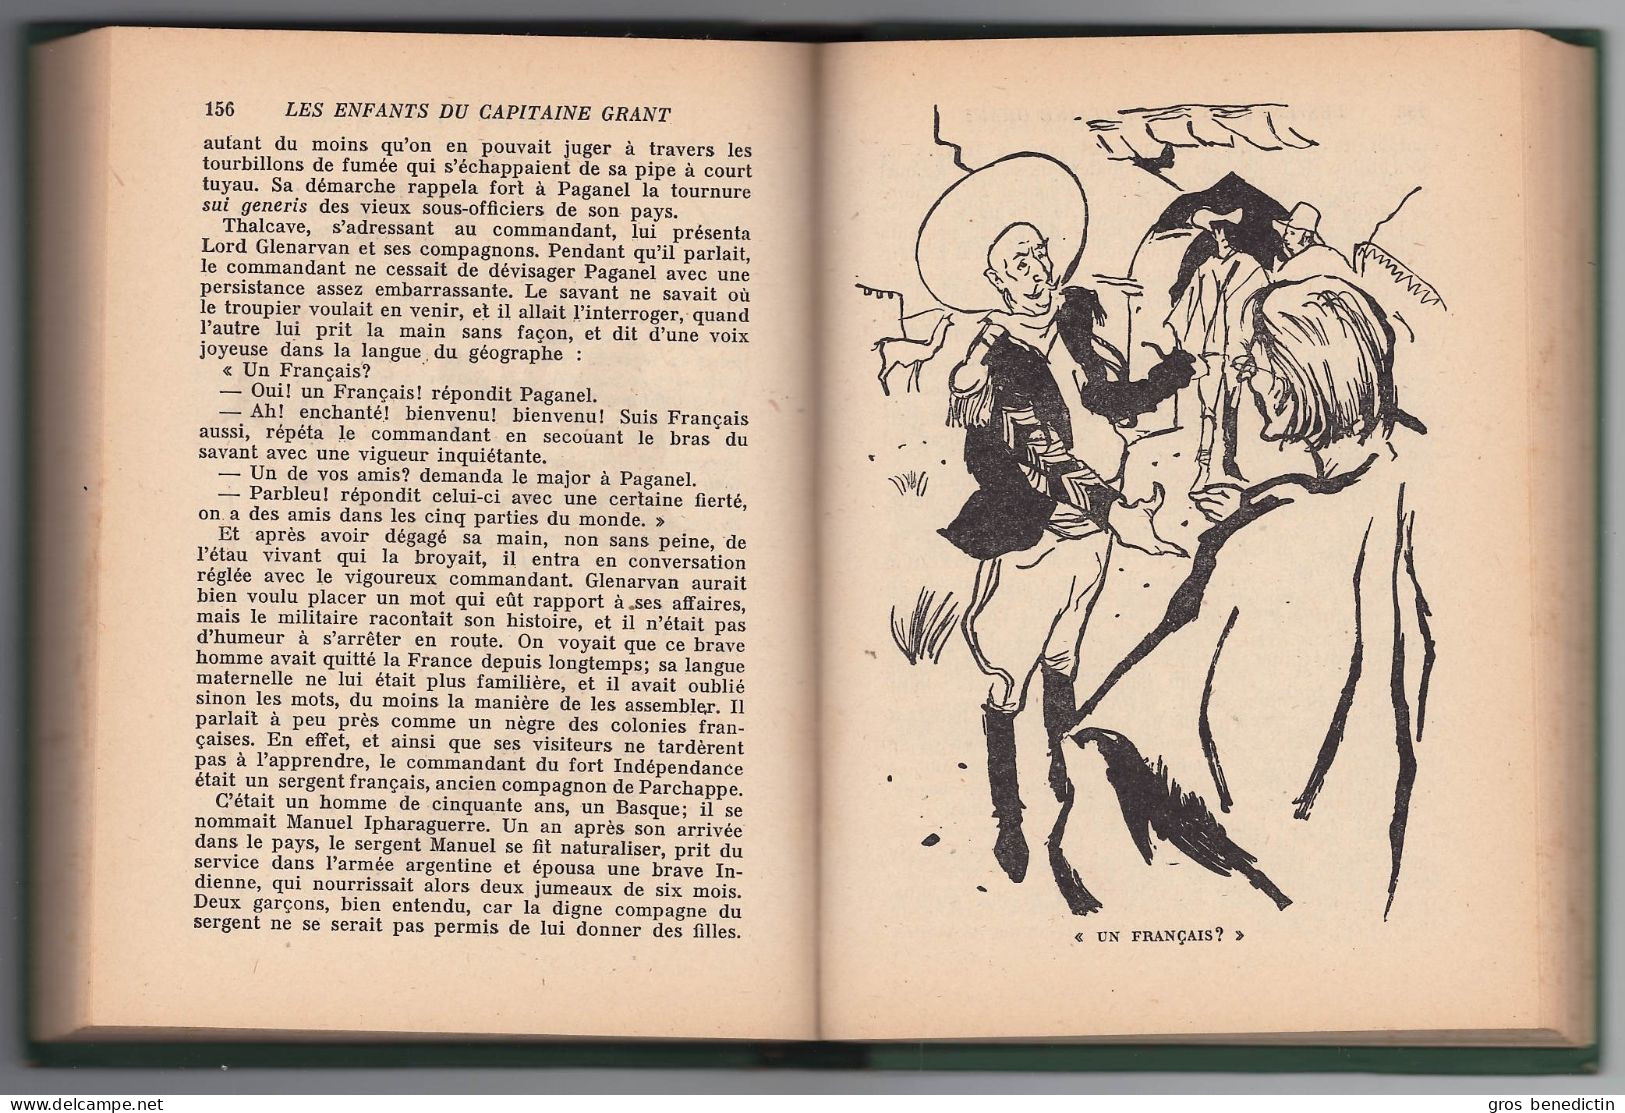 Hachette - Bibliothèque Verte Avec Jaquette N°240 -  Jules Verne - "Les Enfants Du Capitaine Grant (Tome 1)" - 1957 - Biblioteca Verde